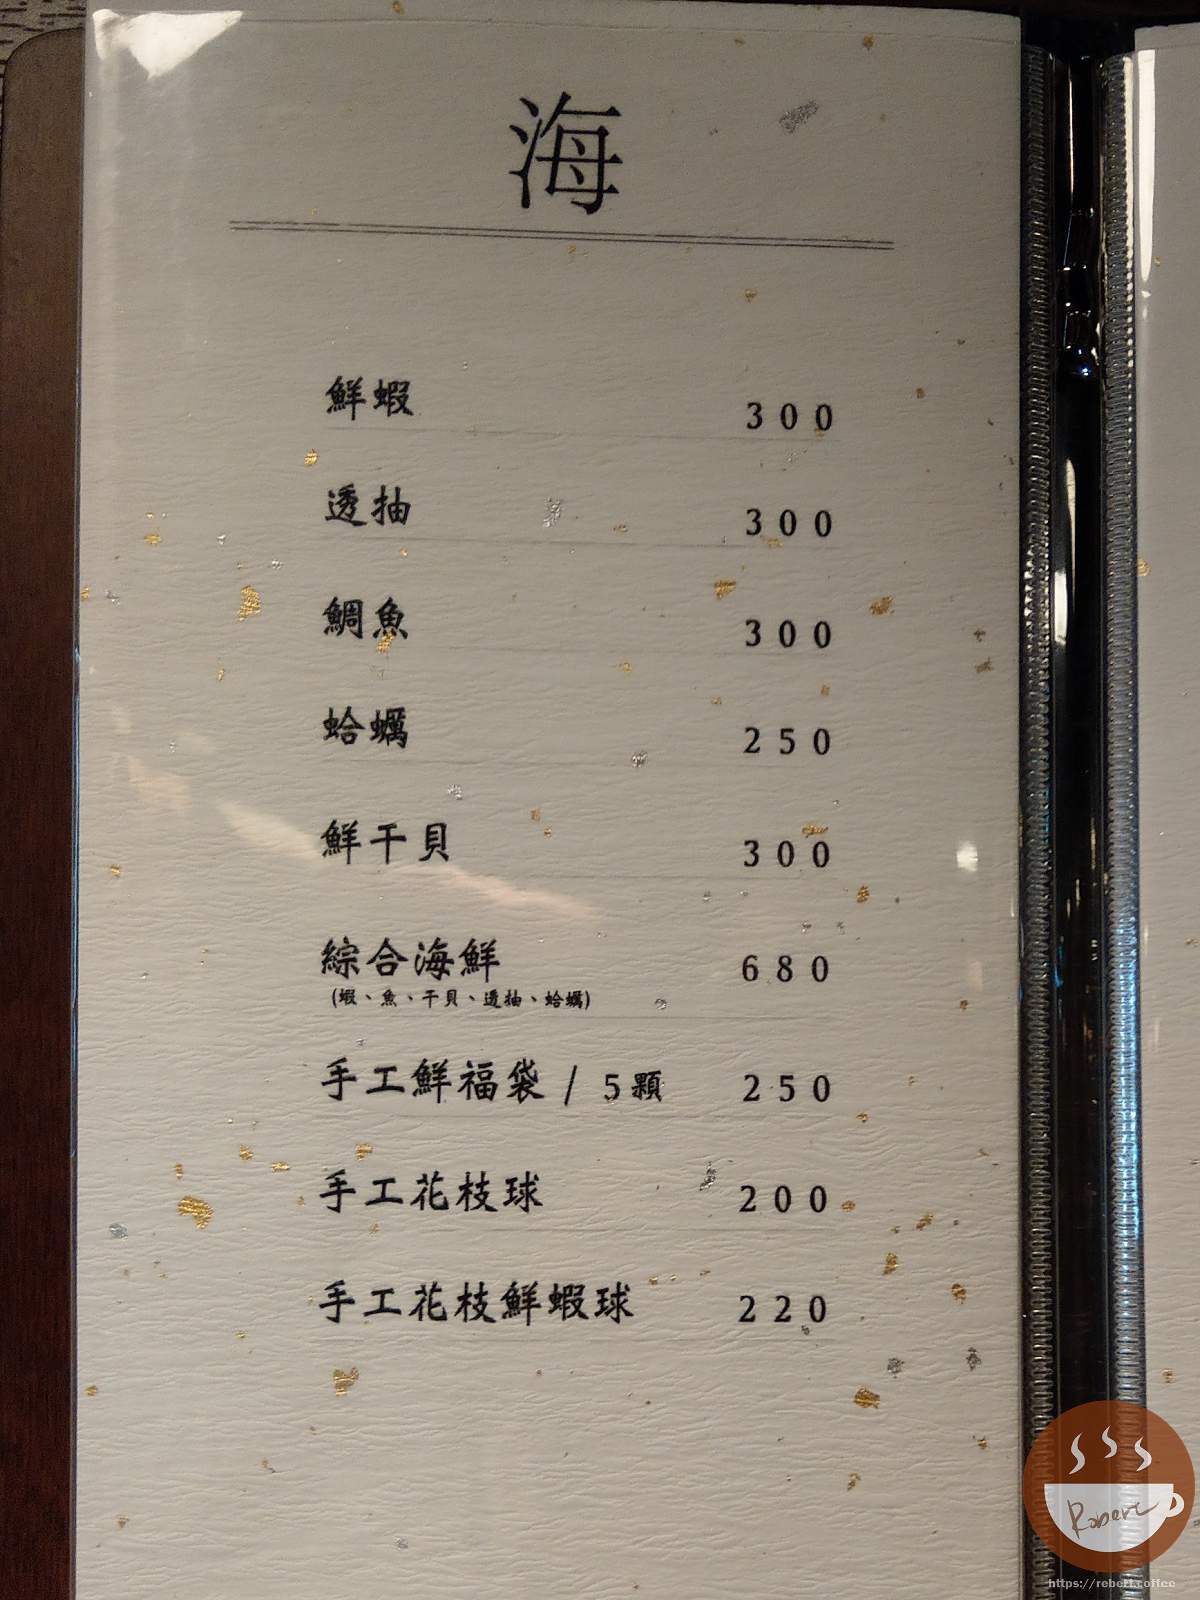 鼎旺麻辣鍋海鮮菜單